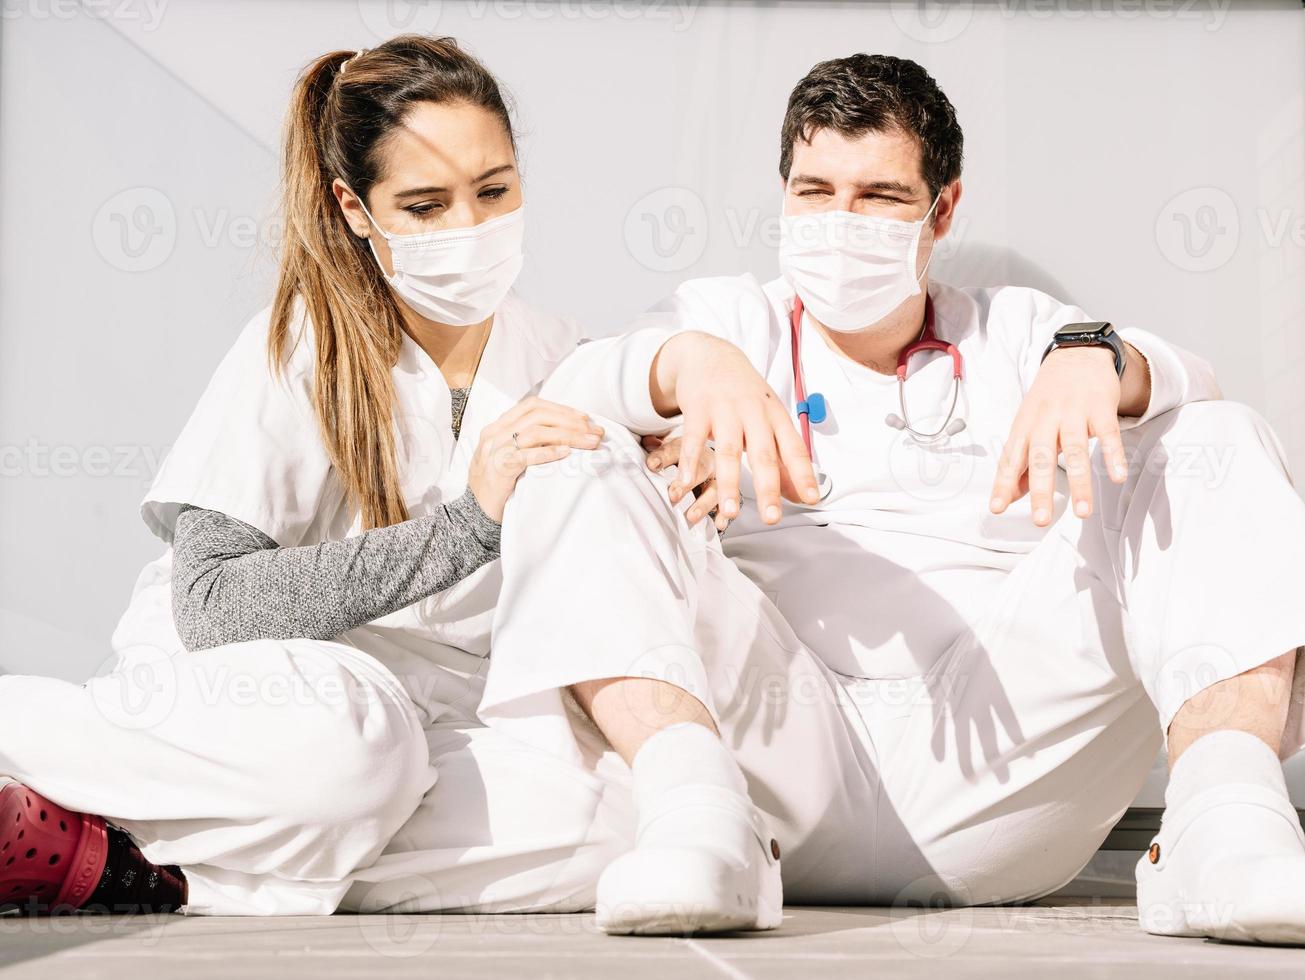 trötta läkare som sover på golvet på klinikens terrass tillsammans foto